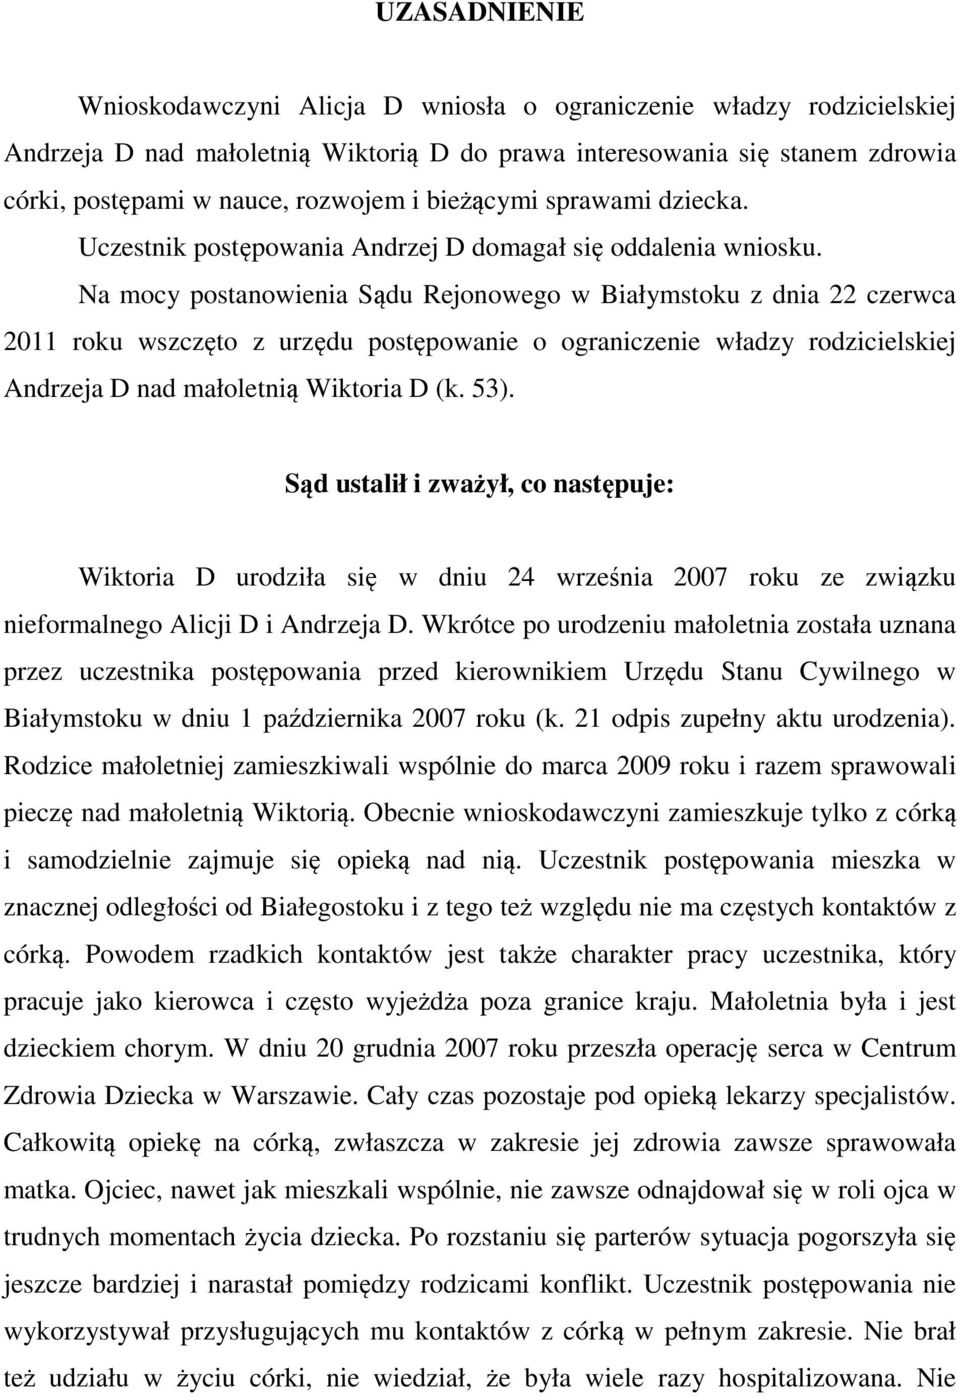 Na mocy postanowienia Sądu Rejonowego w Białymstoku z dnia 22 czerwca 2011 roku wszczęto z urzędu postępowanie o ograniczenie władzy rodzicielskiej Andrzeja D nad małoletnią Wiktoria D (k. 53).